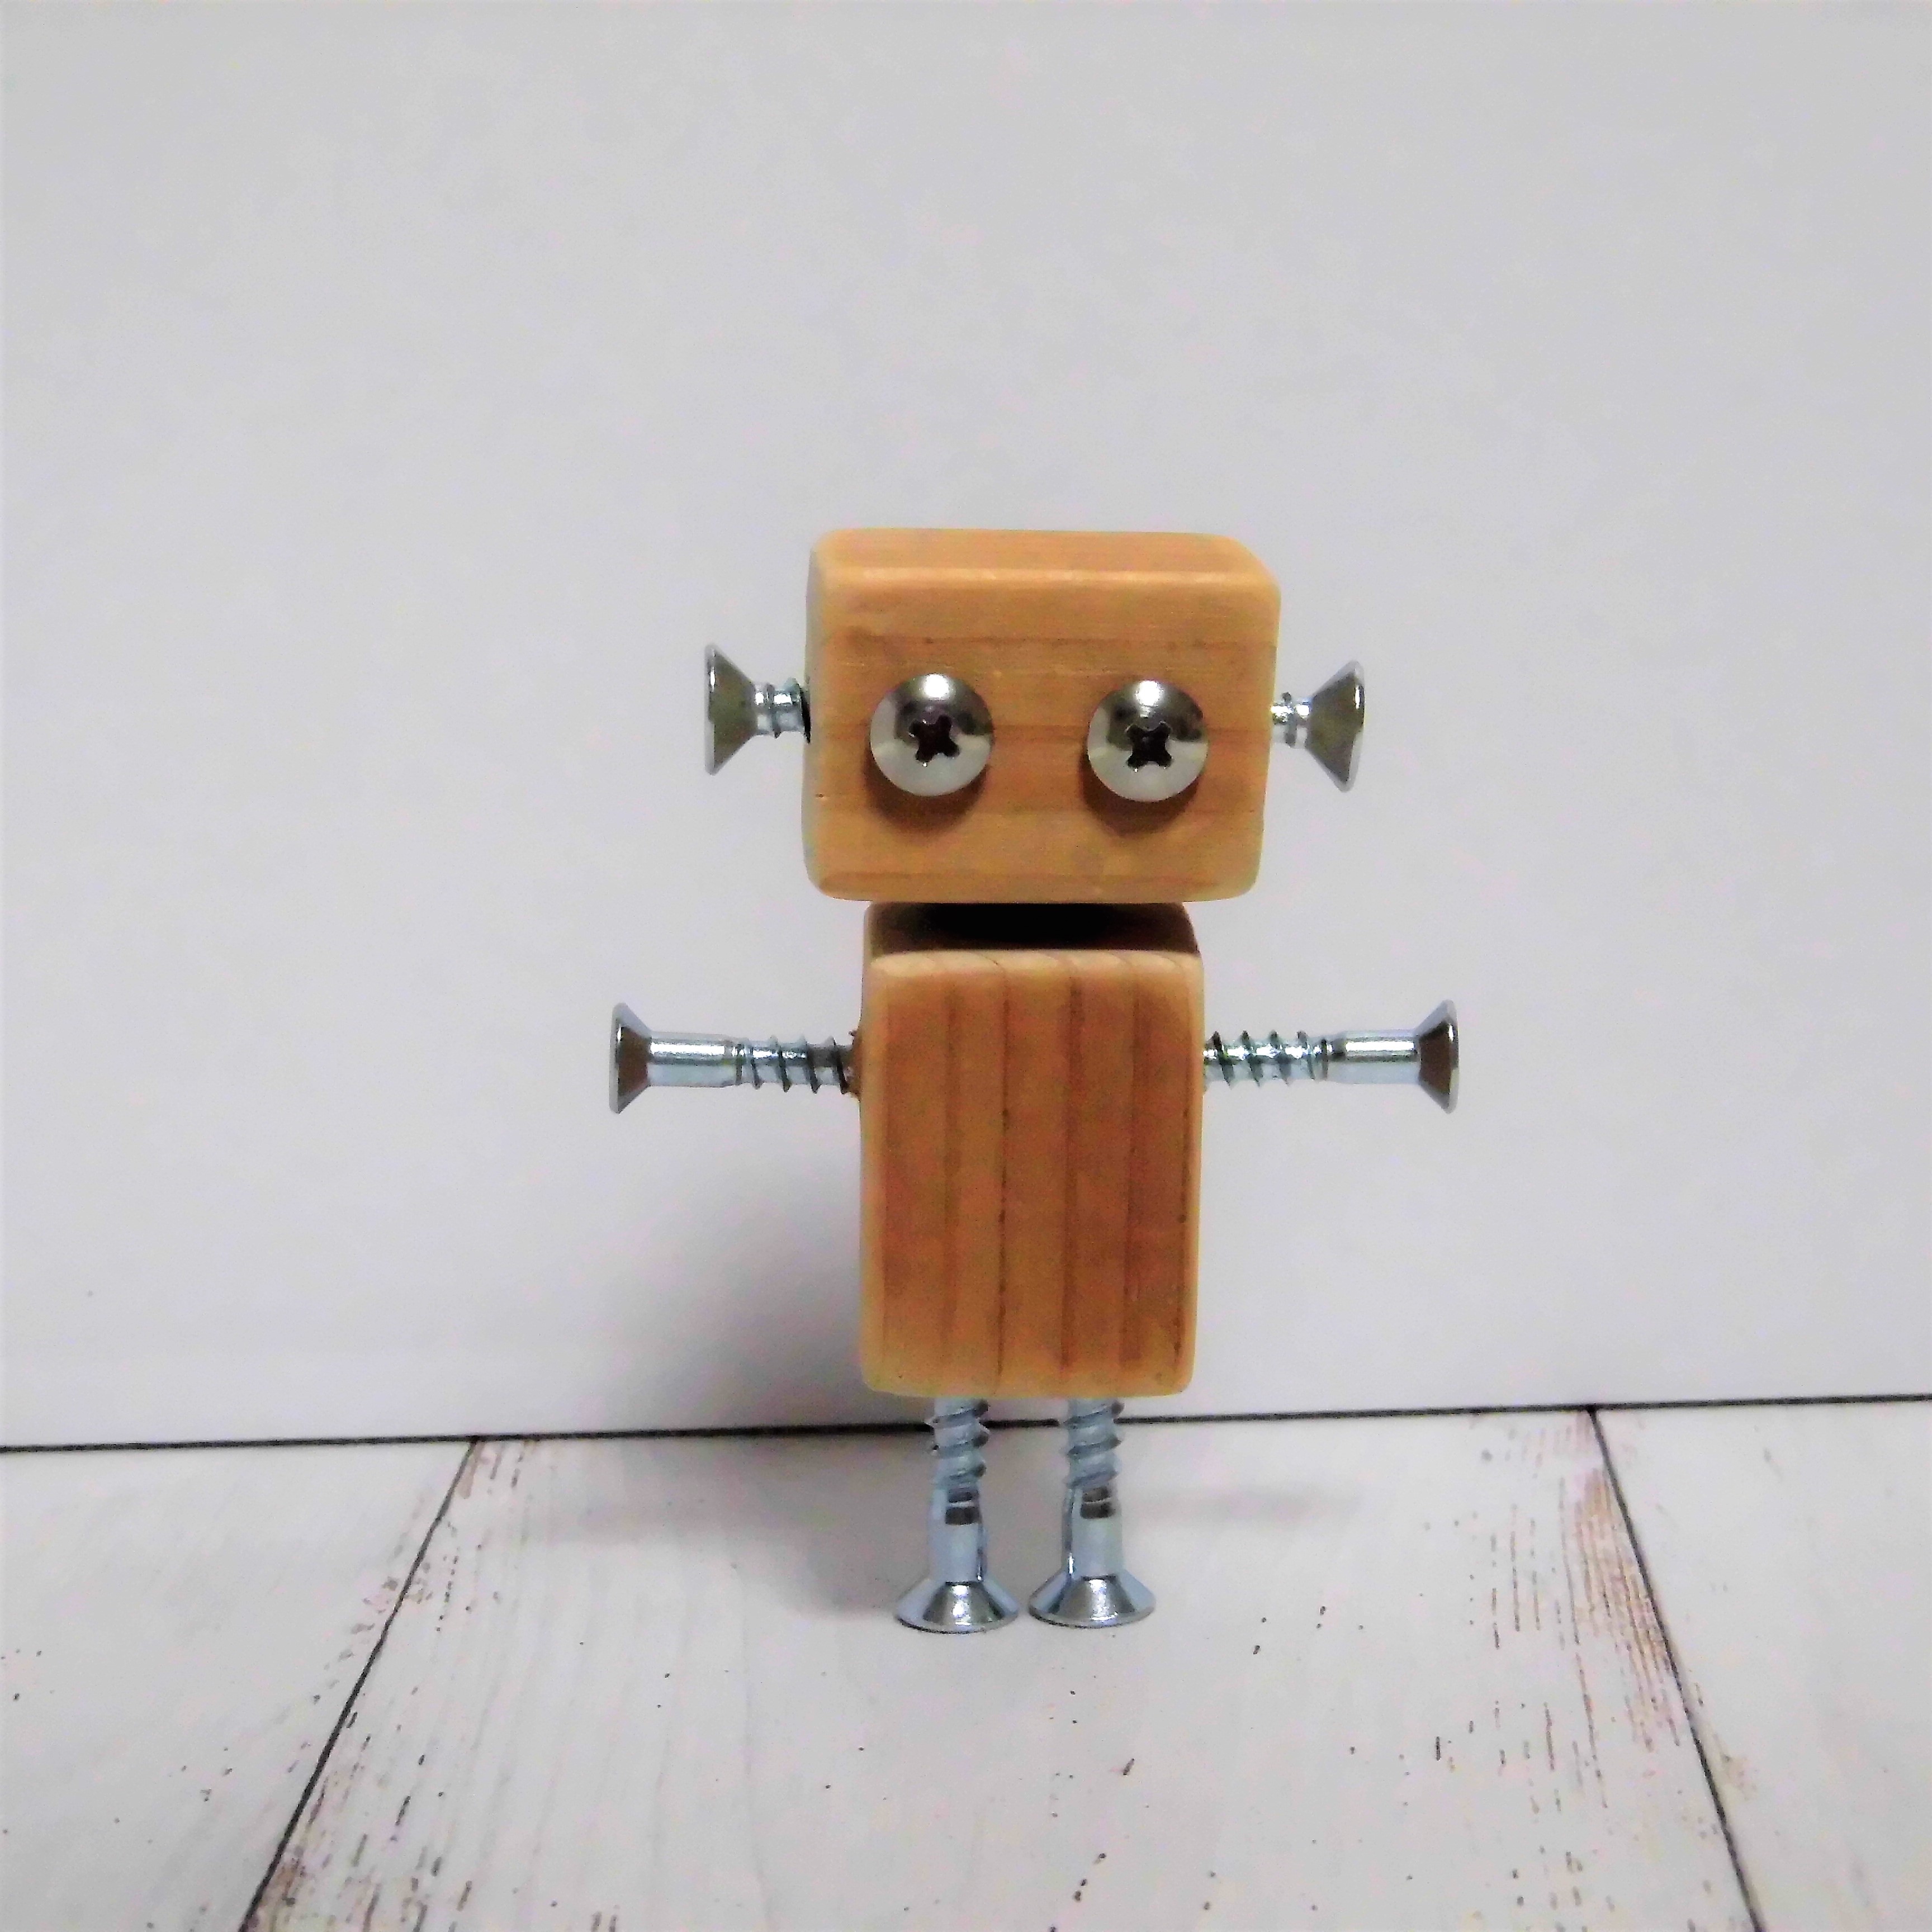 送料無料 はいざいロボットくんキット 手作りキット Iichi ハンドメイド クラフト作品 手仕事品の通販